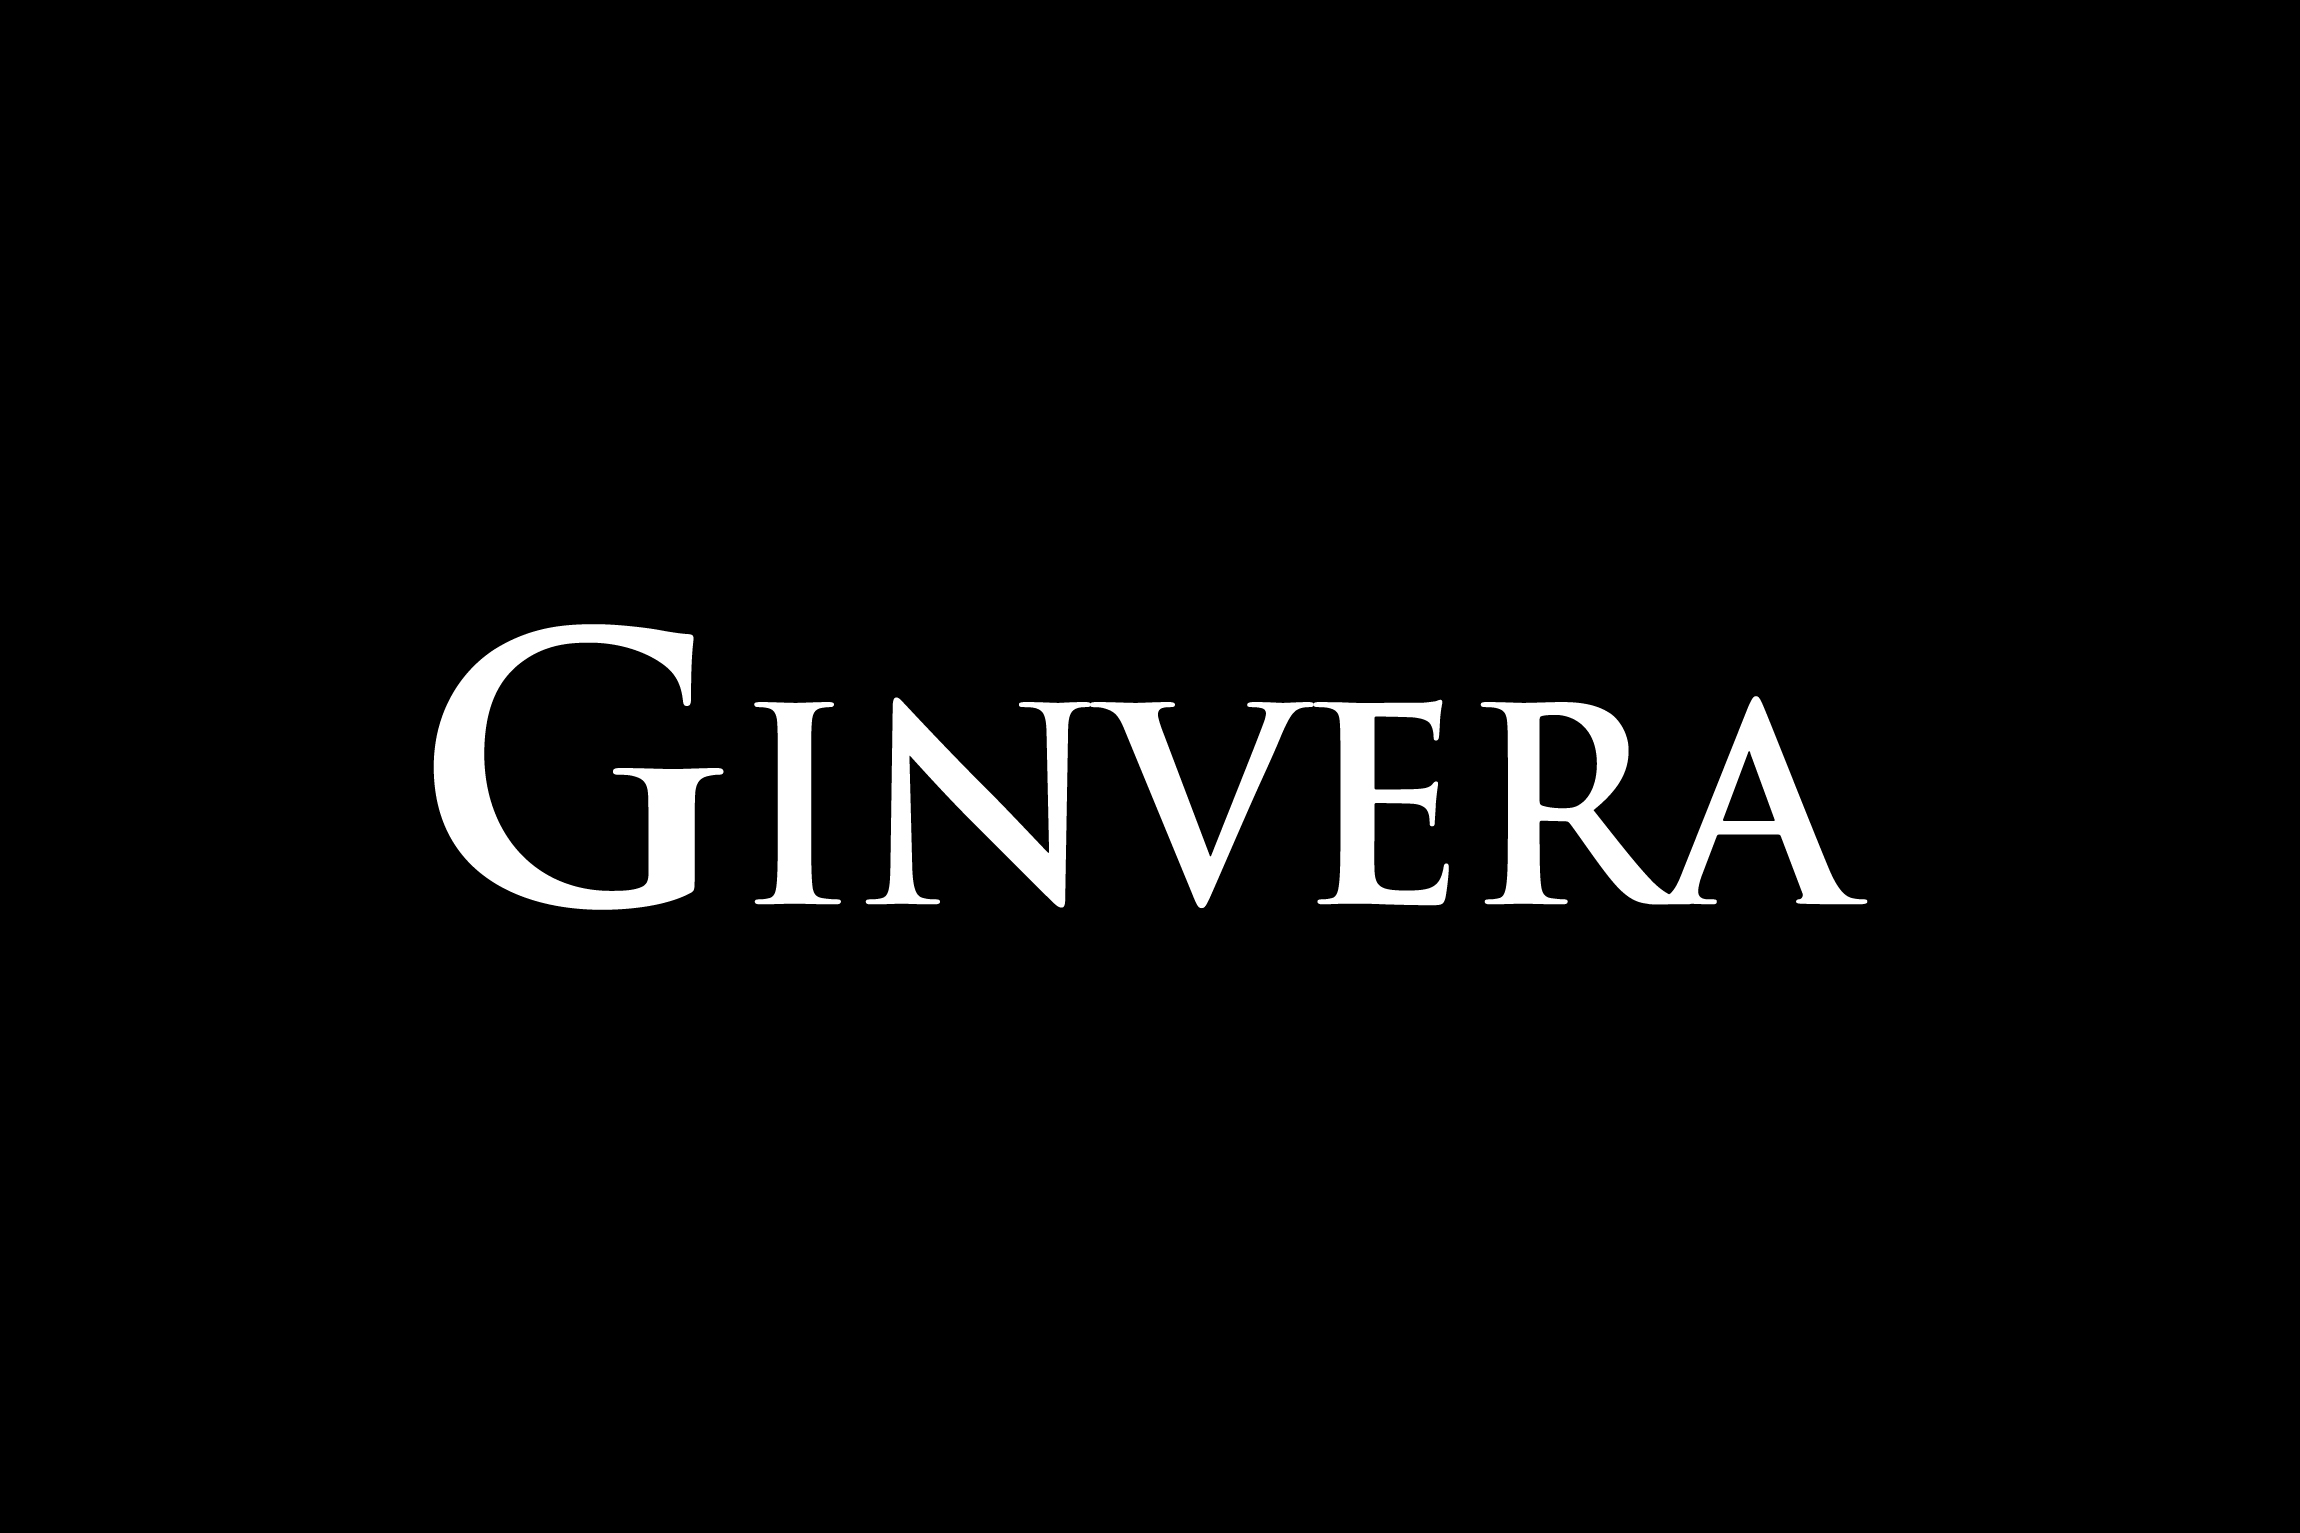 Ginvera Project